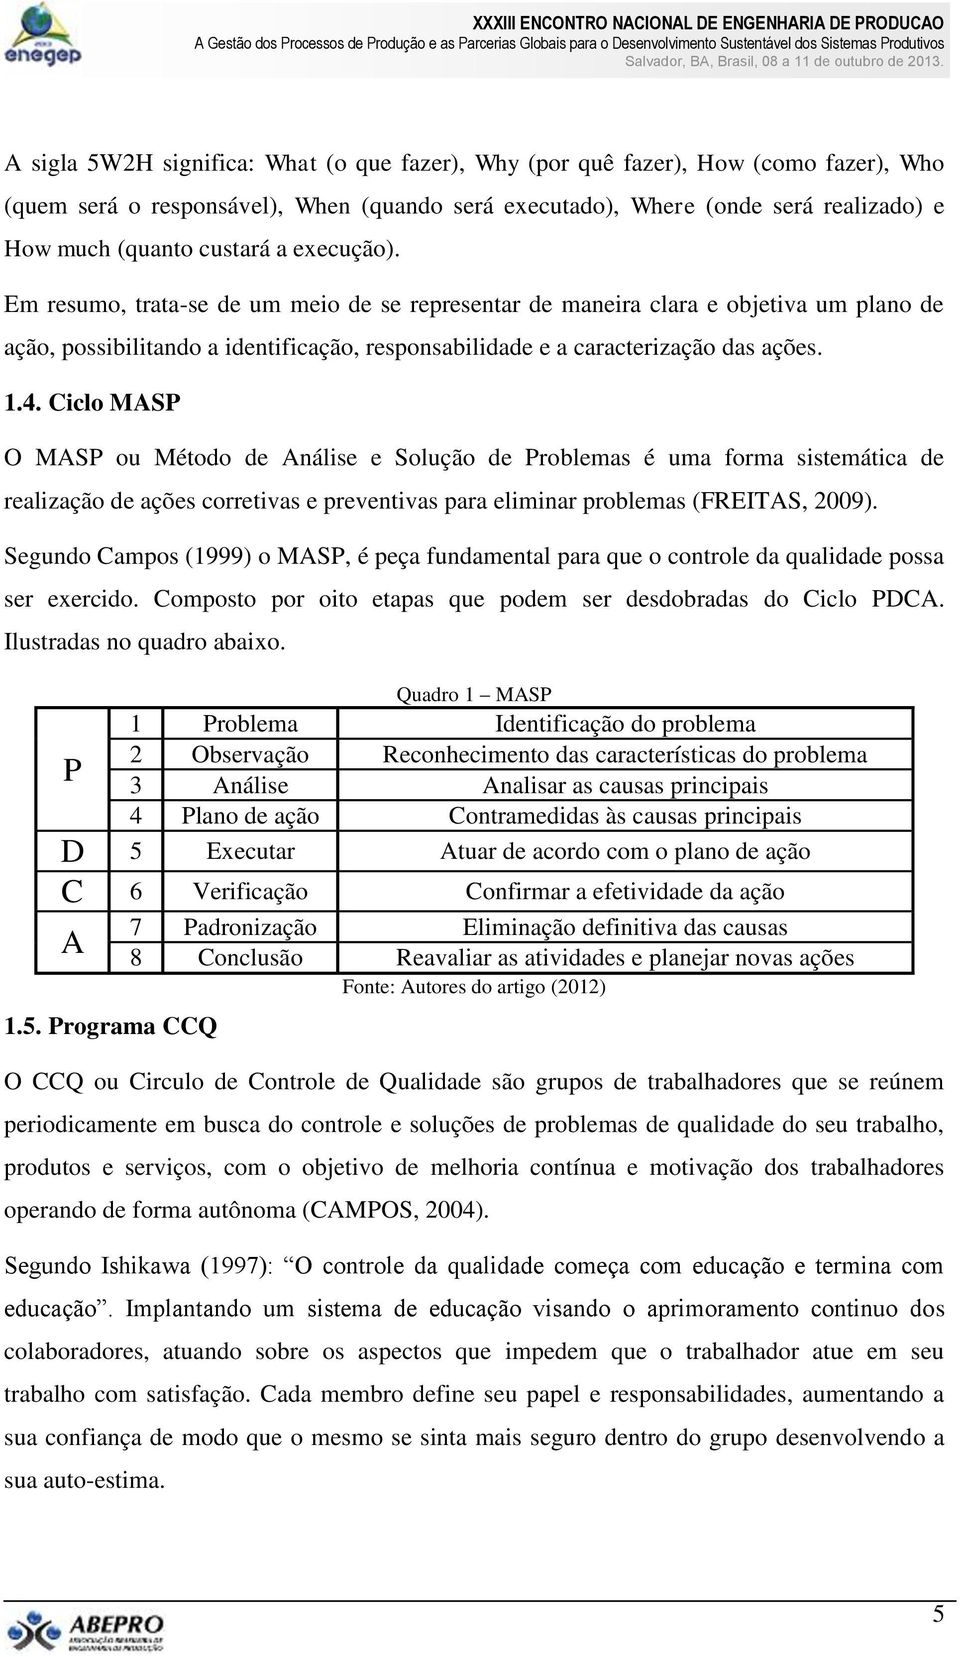 Ciclo MASP O MASP ou Método de Análise e Solução de Problemas é uma forma sistemática de realização de ações corretivas e preventivas para eliminar problemas (FREITAS, 2009).